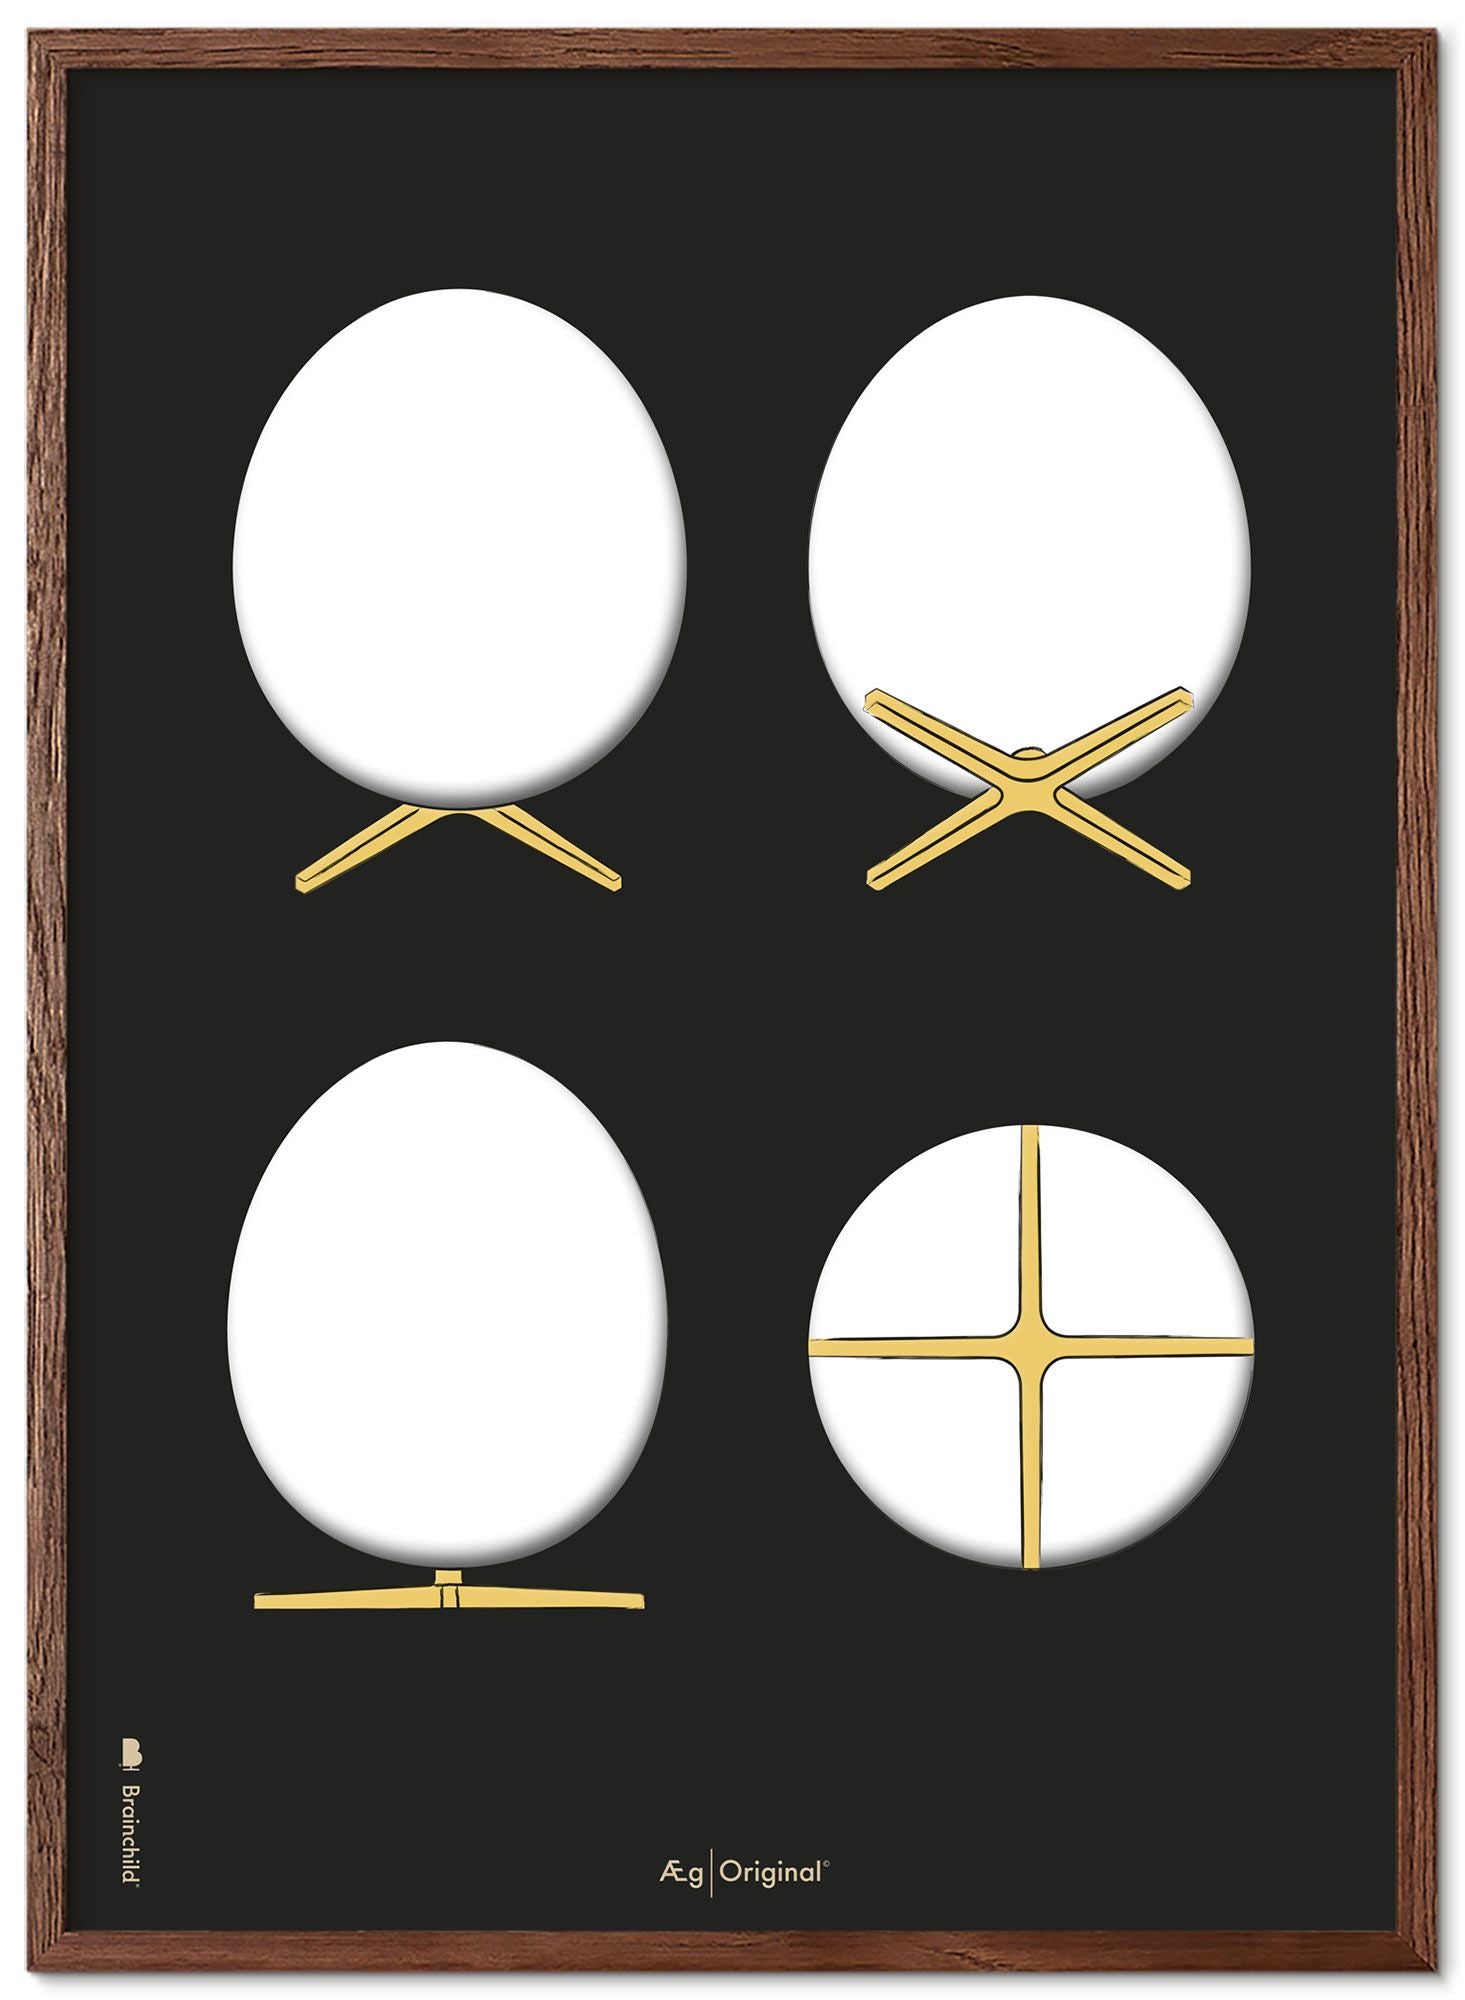 Hjernebarn eggdesign skisser plakatramme laget av mørkt tre 70x100 cm, svart bakgrunn